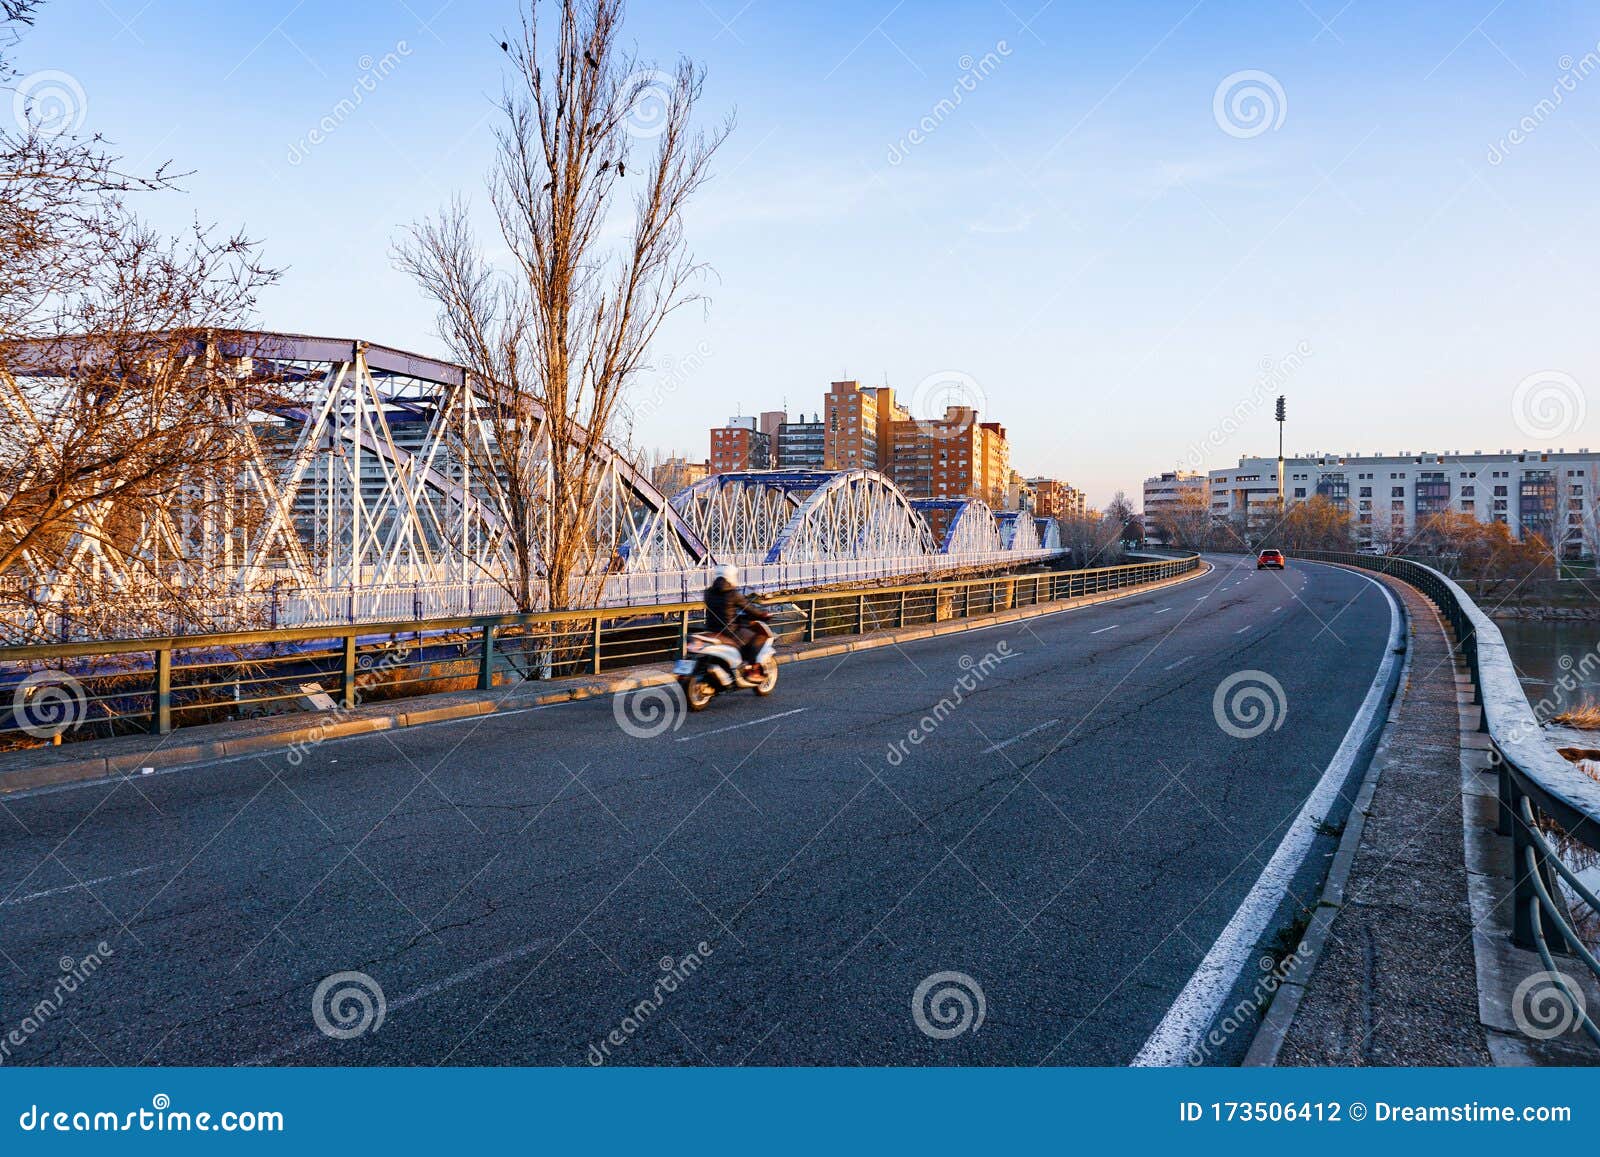 crossing the blue iron bridge in zaragoza by motorcycle at sunrise. .cruzando el puente de hierro azul en zaragoza en moto al